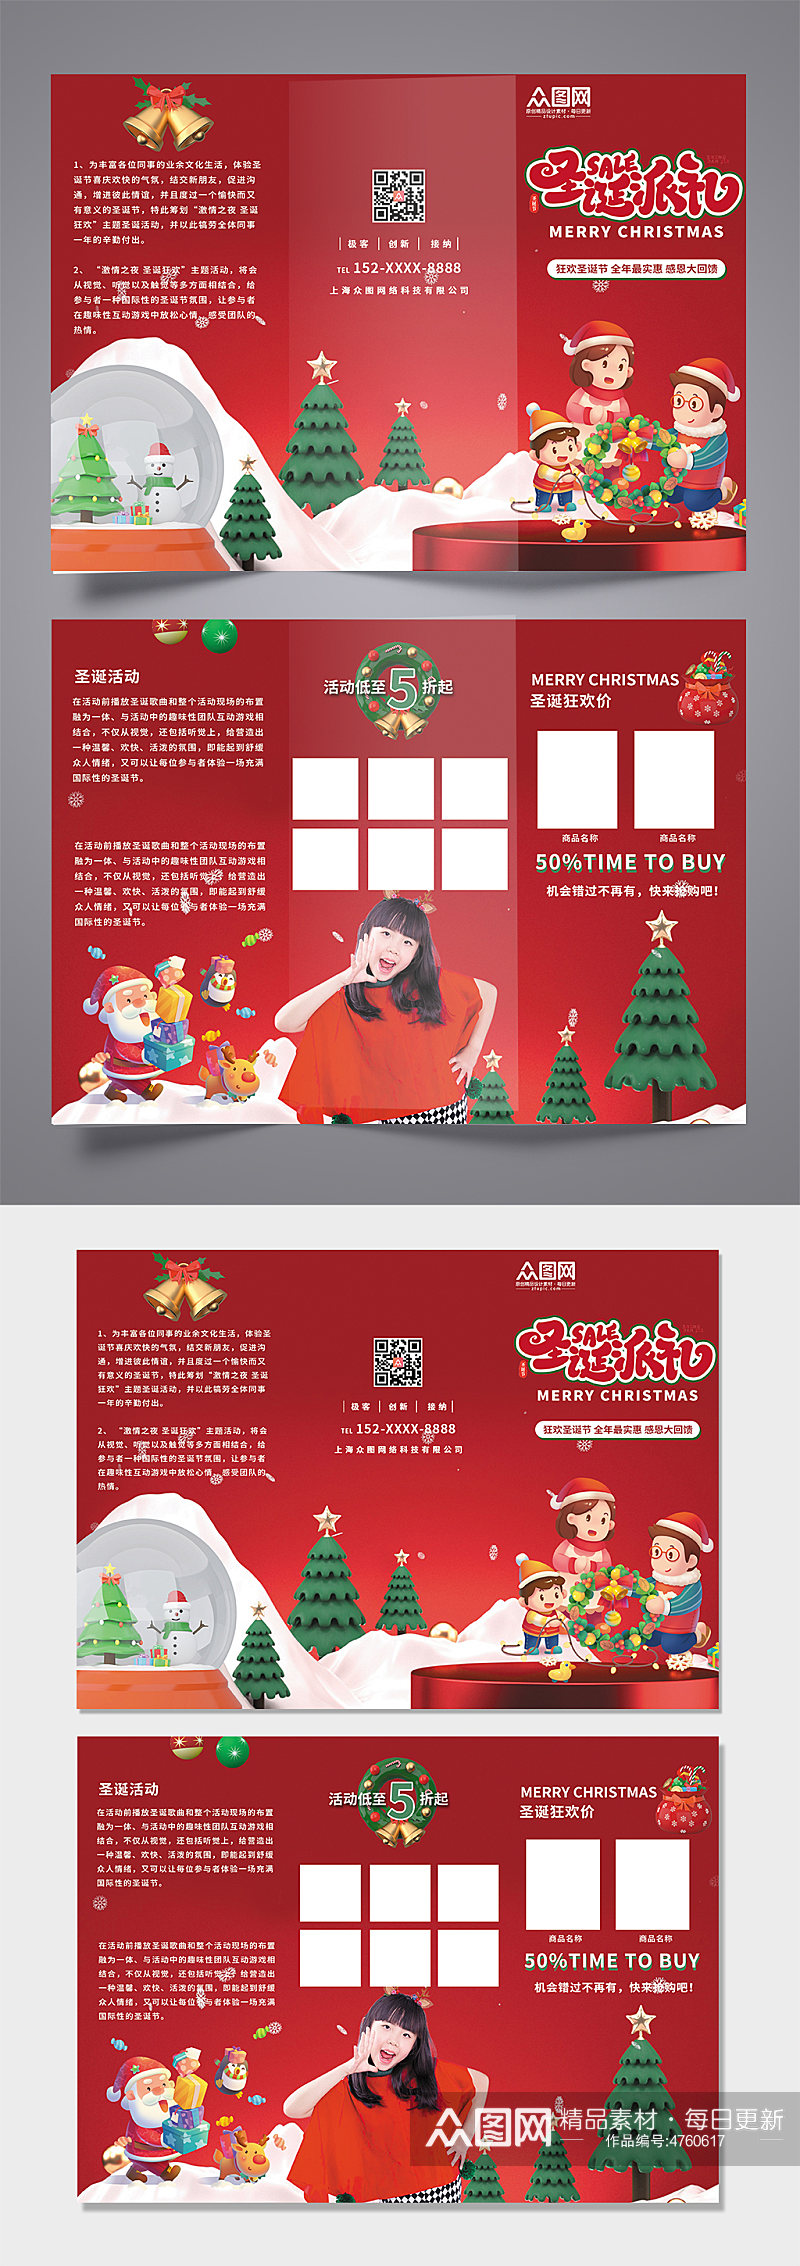 红色简约大气圣诞节促销活动宣传三折页素材